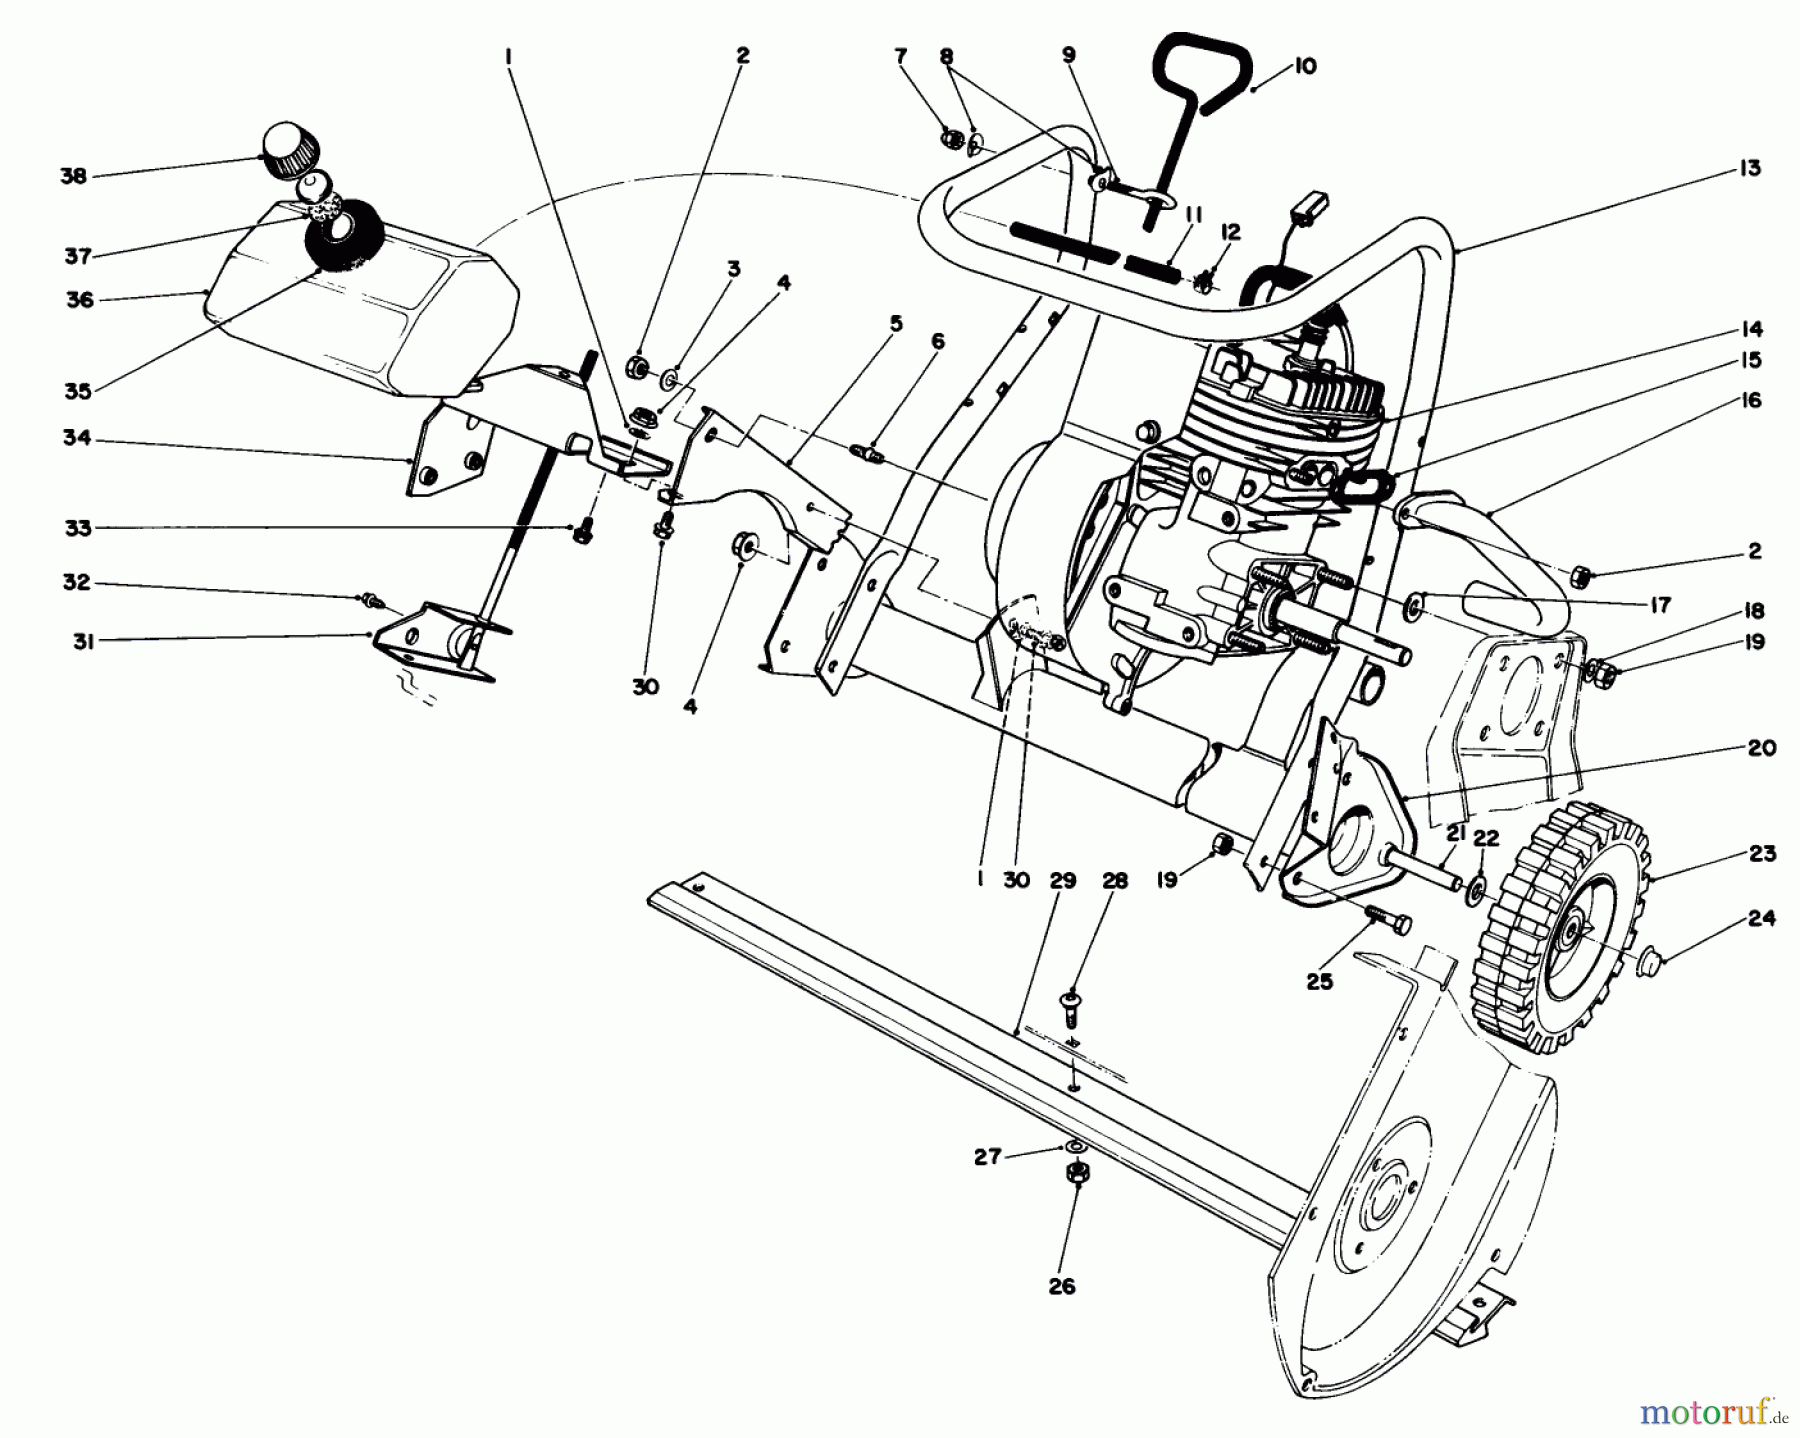  Toro Neu Snow Blowers/Snow Throwers Seite 1 38165 (S-620) - Toro S-620 Snowthrower, 1990 (0000001-0999999) ENGINE ASSEMBLY